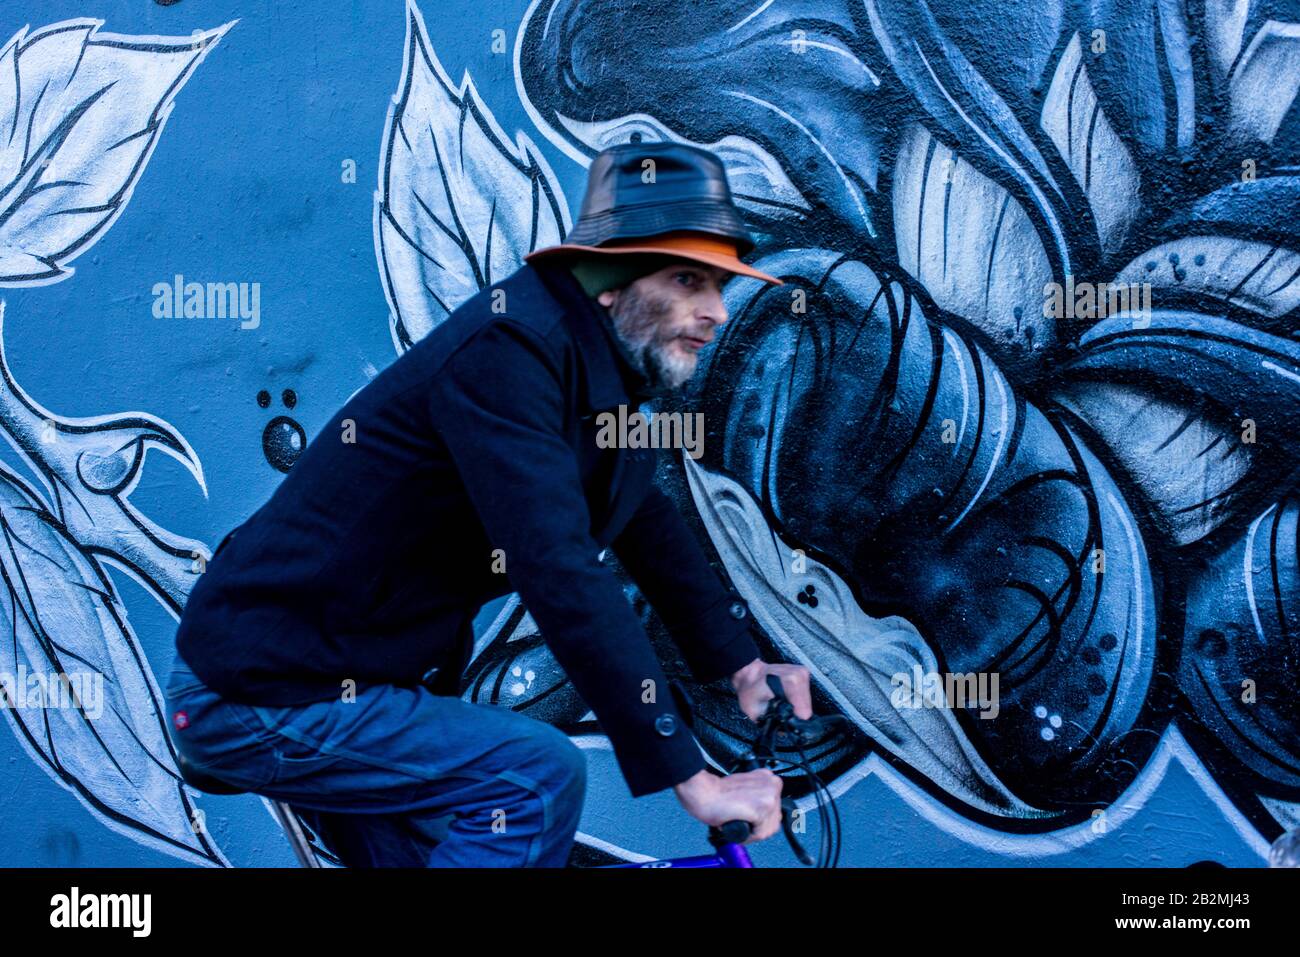 Un homme vêtu de cycles bleus passe devant un morceau d'art graffiti à motifs floraux bleus tout en portant deux chapeaux l'un sur l'autre. Banque D'Images